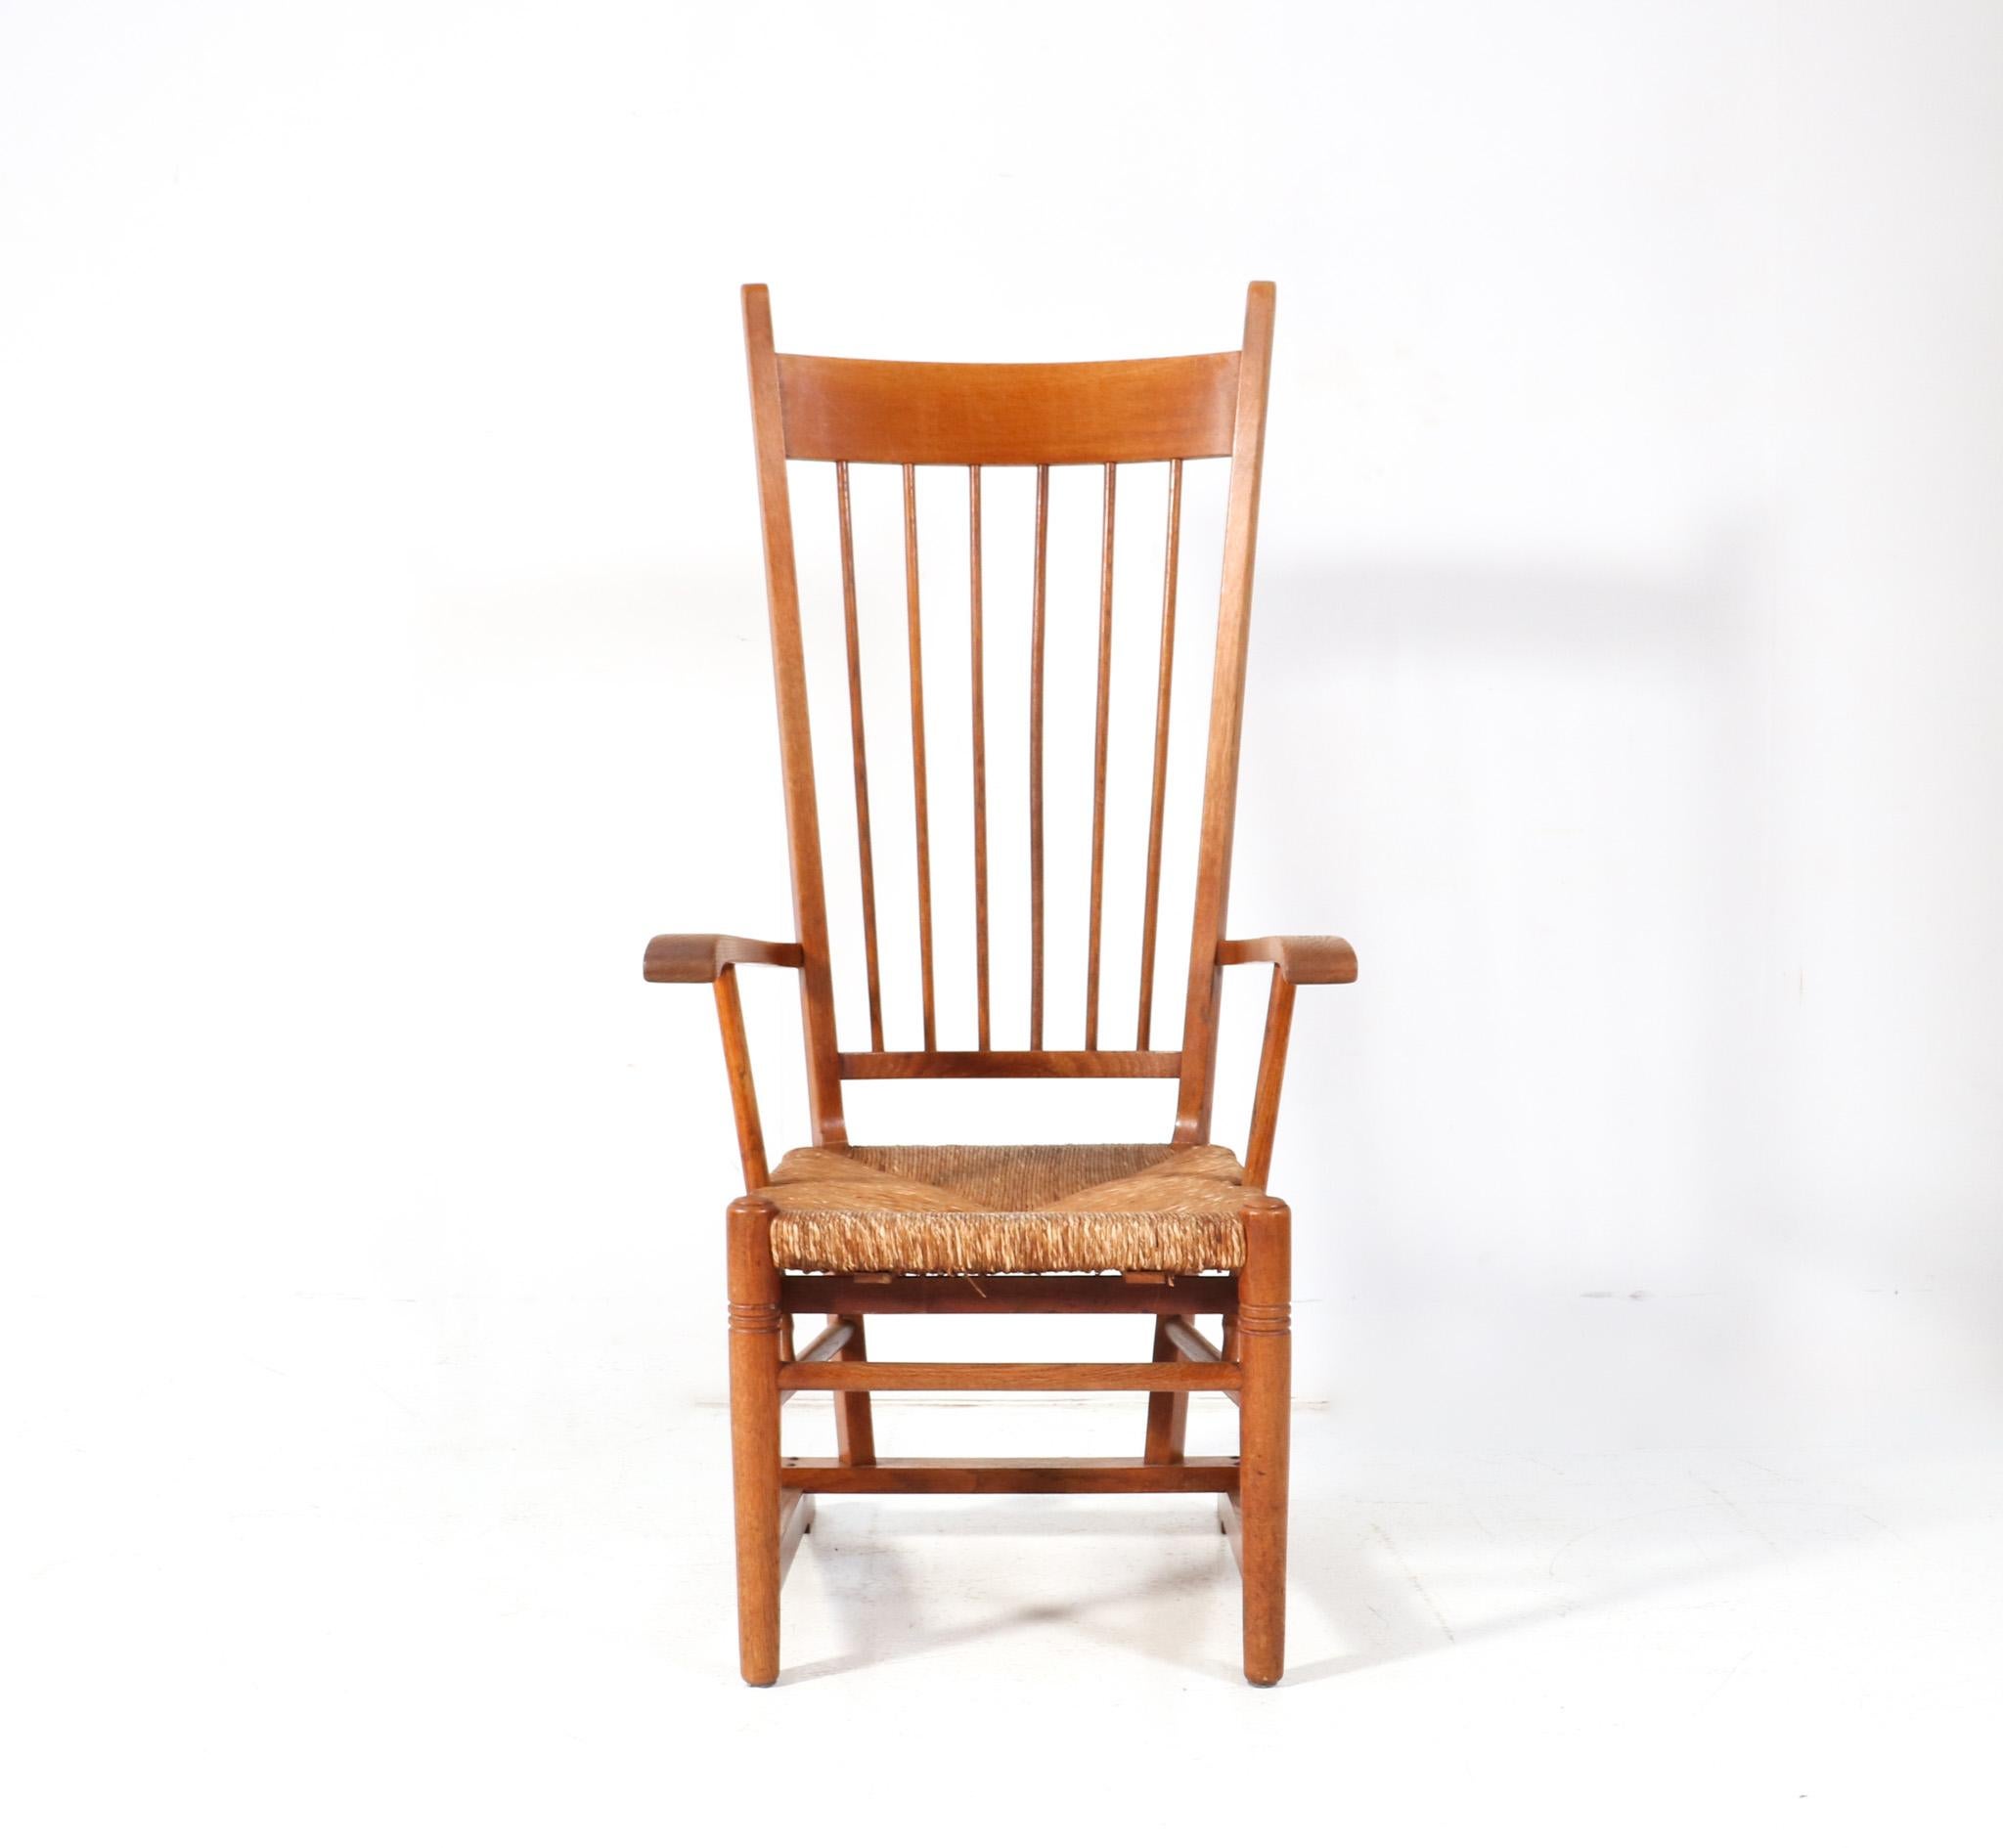 Atemberaubender und seltener Arts & Crafts Jugendstil-Sessel mit hoher Rückenlehne.
Auffälliges niederländisches Design aus den 1900er Jahren.
Massives Eichengestell mit originalem Binsen-Sitz.
Gut gestaltete hohe Rückenlehne und elegante und